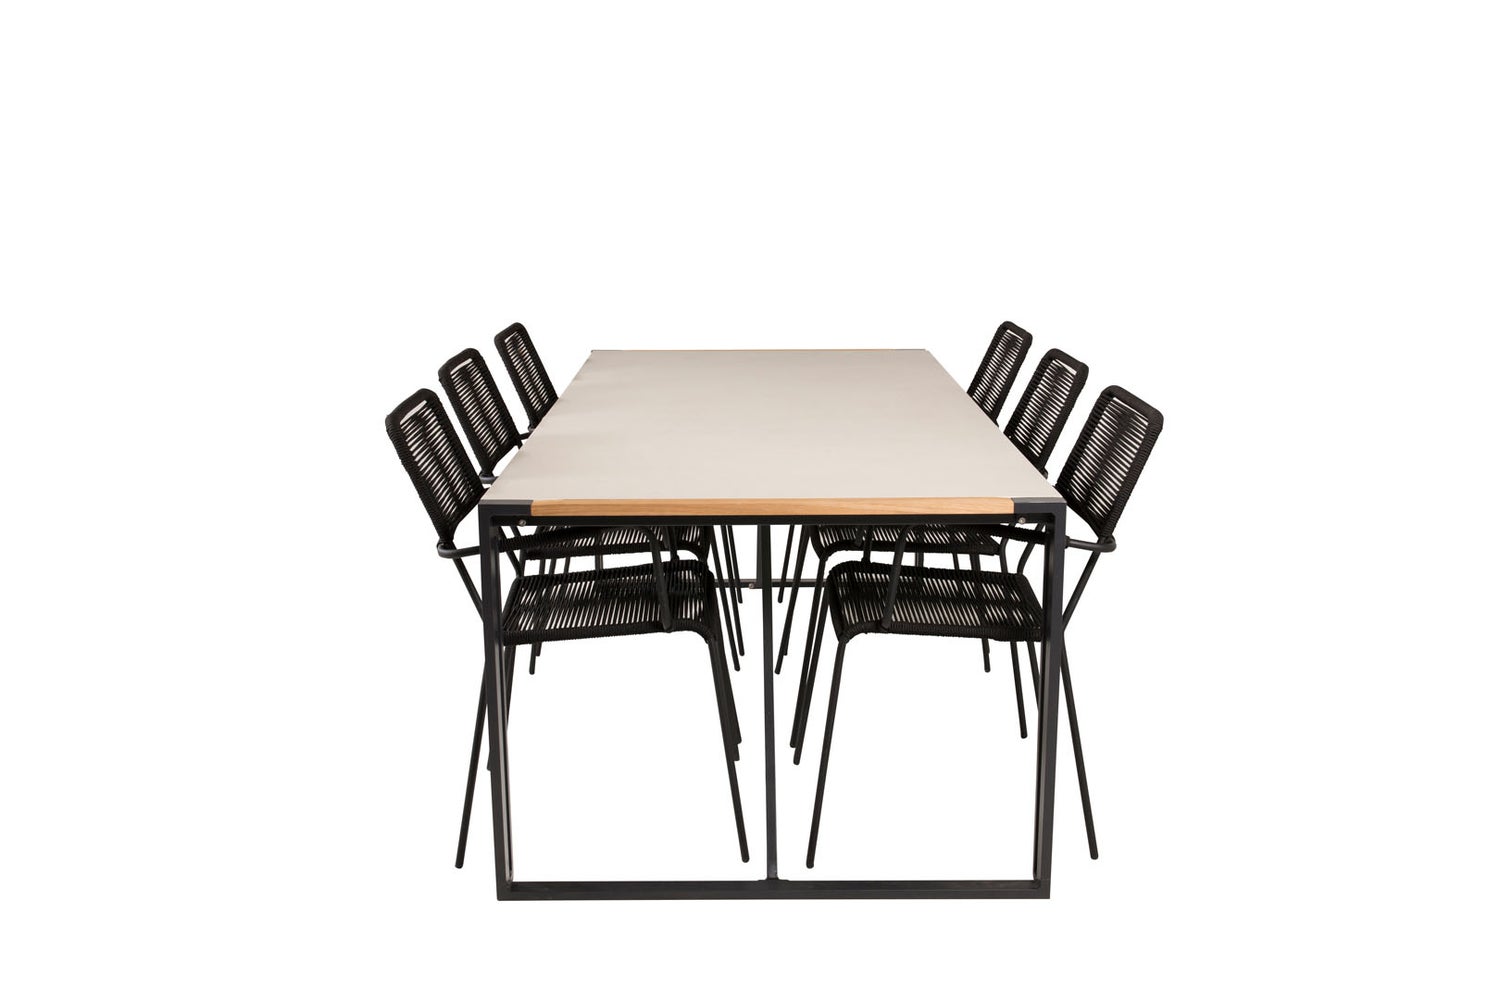 Texas Gartenset Tisch 100x200cm und 6 Stühle ArmlehneS  Lindos schwarz, natur, grau.